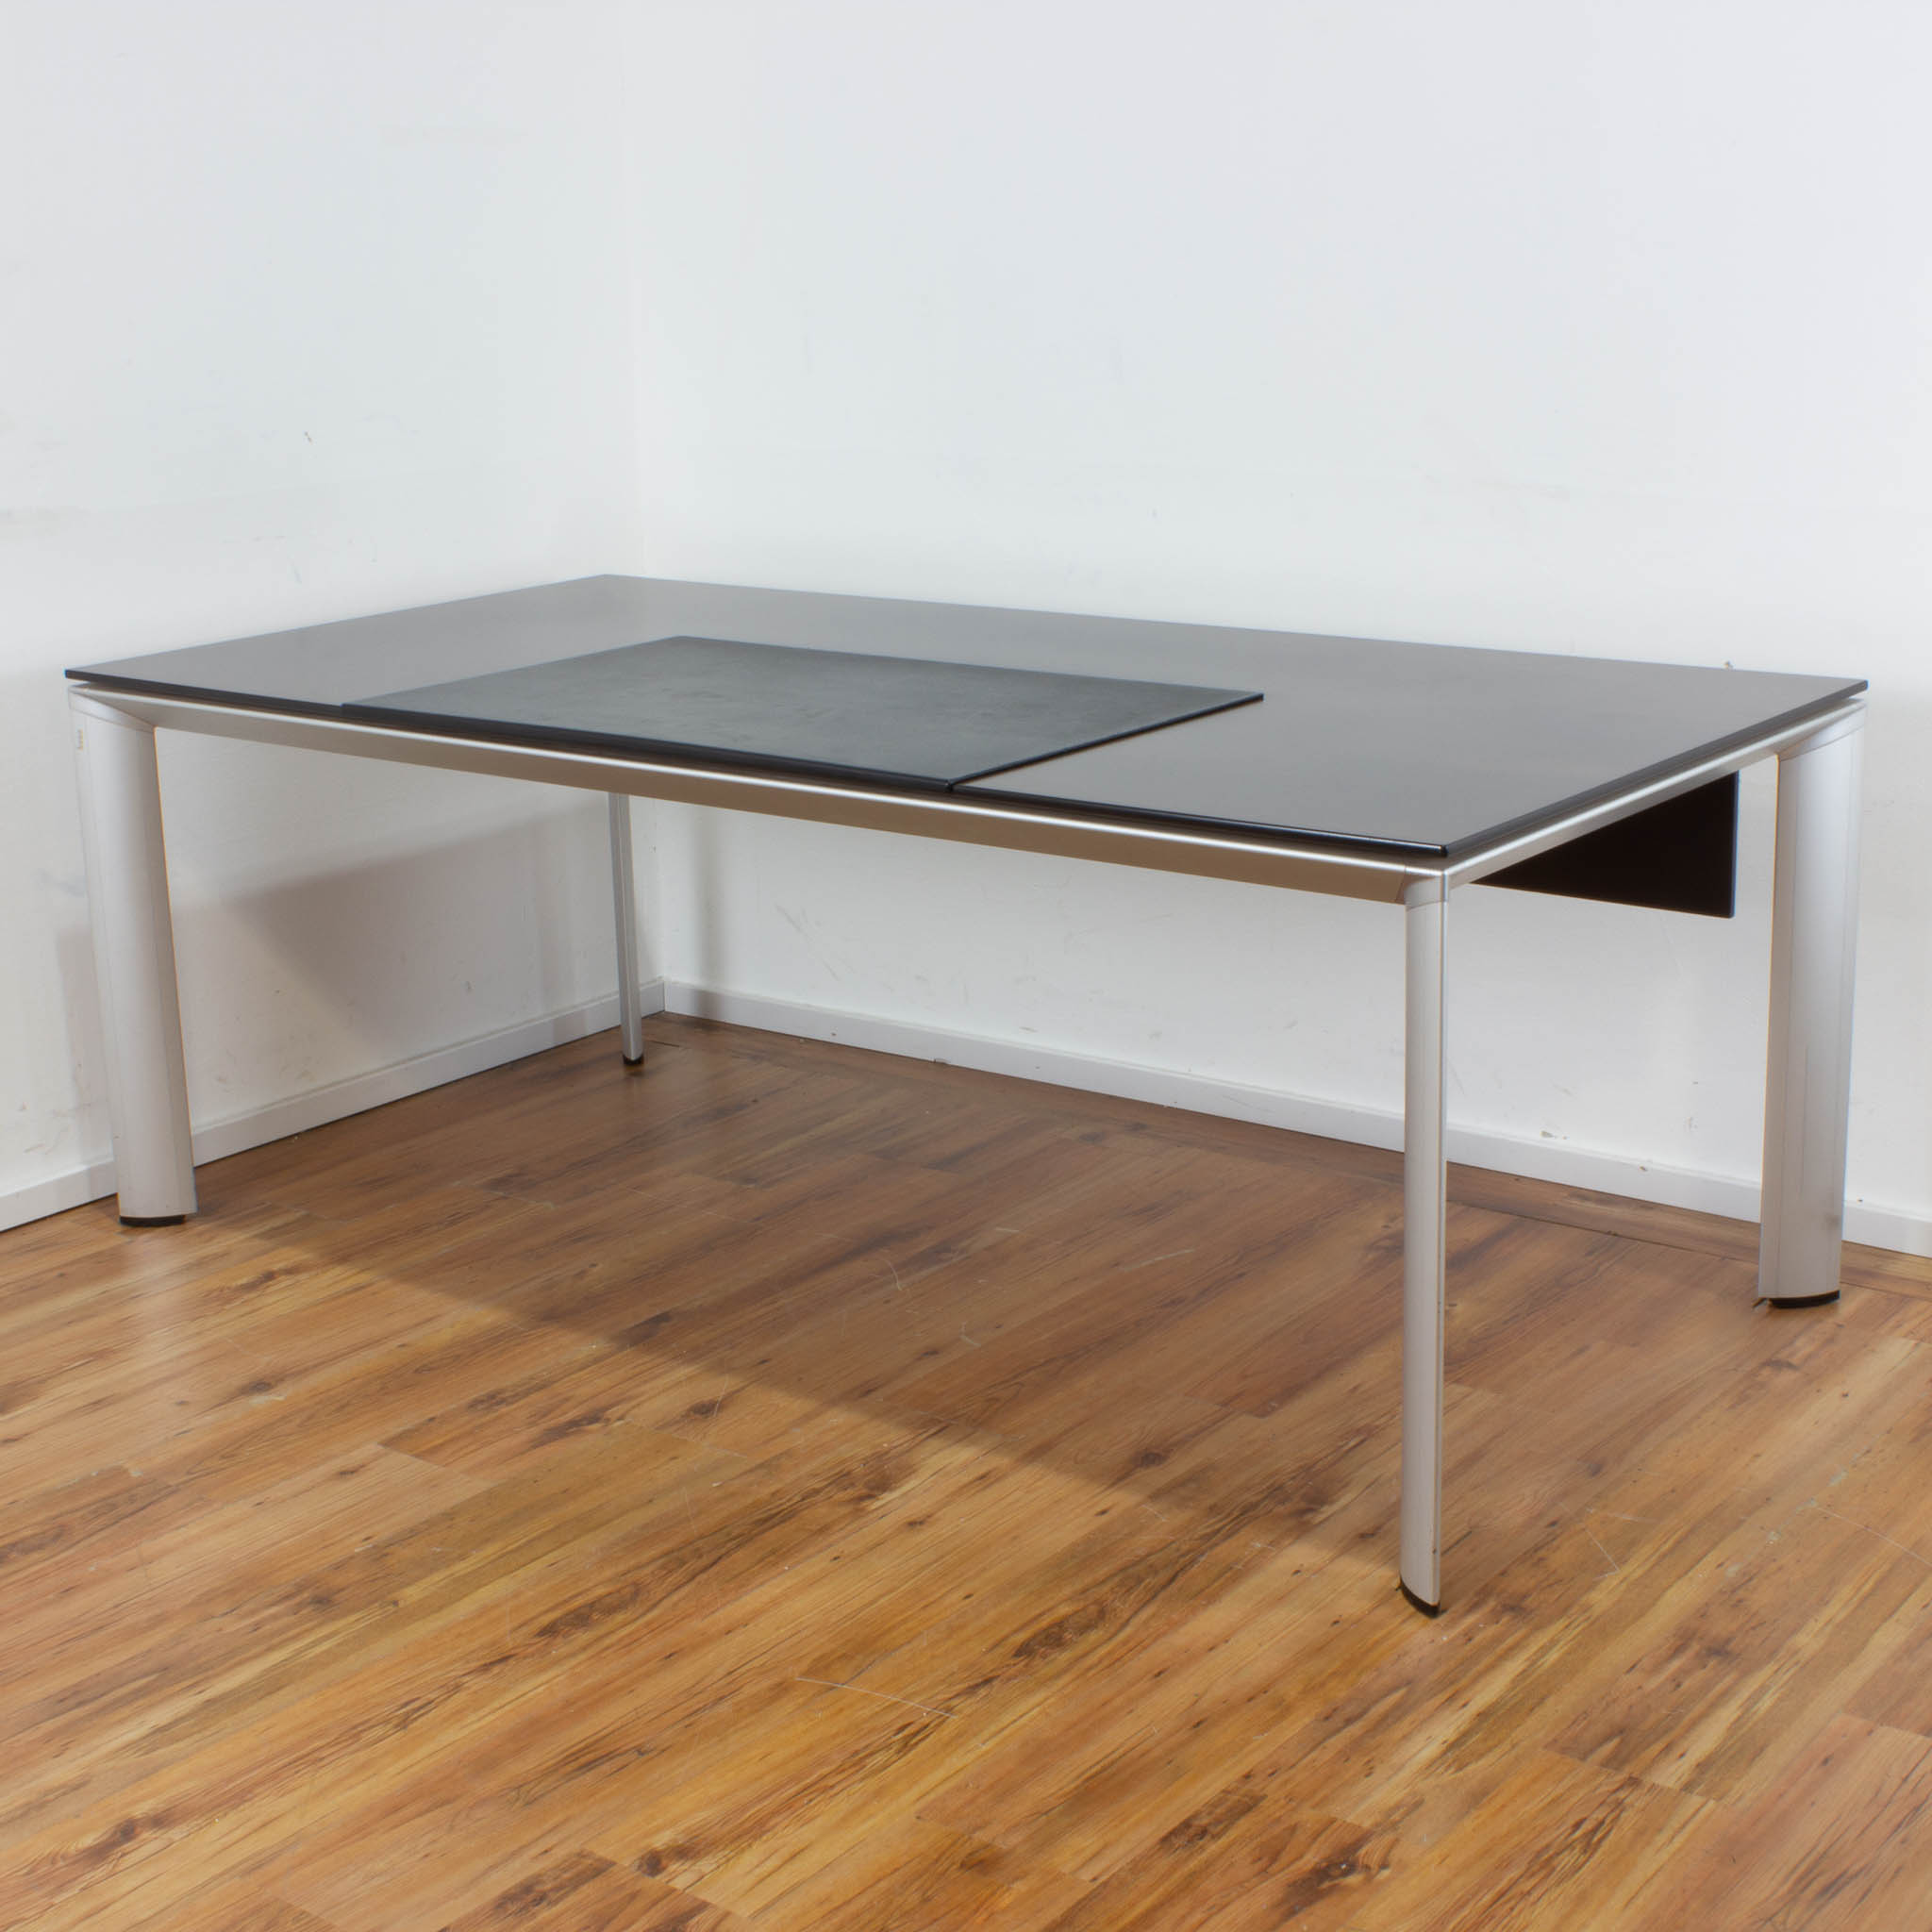 Bene Schreibtisch 200 x 100 cm - dunkle Nussbaum Holzplatte - 4-Fuß-Aluminiumgestell 